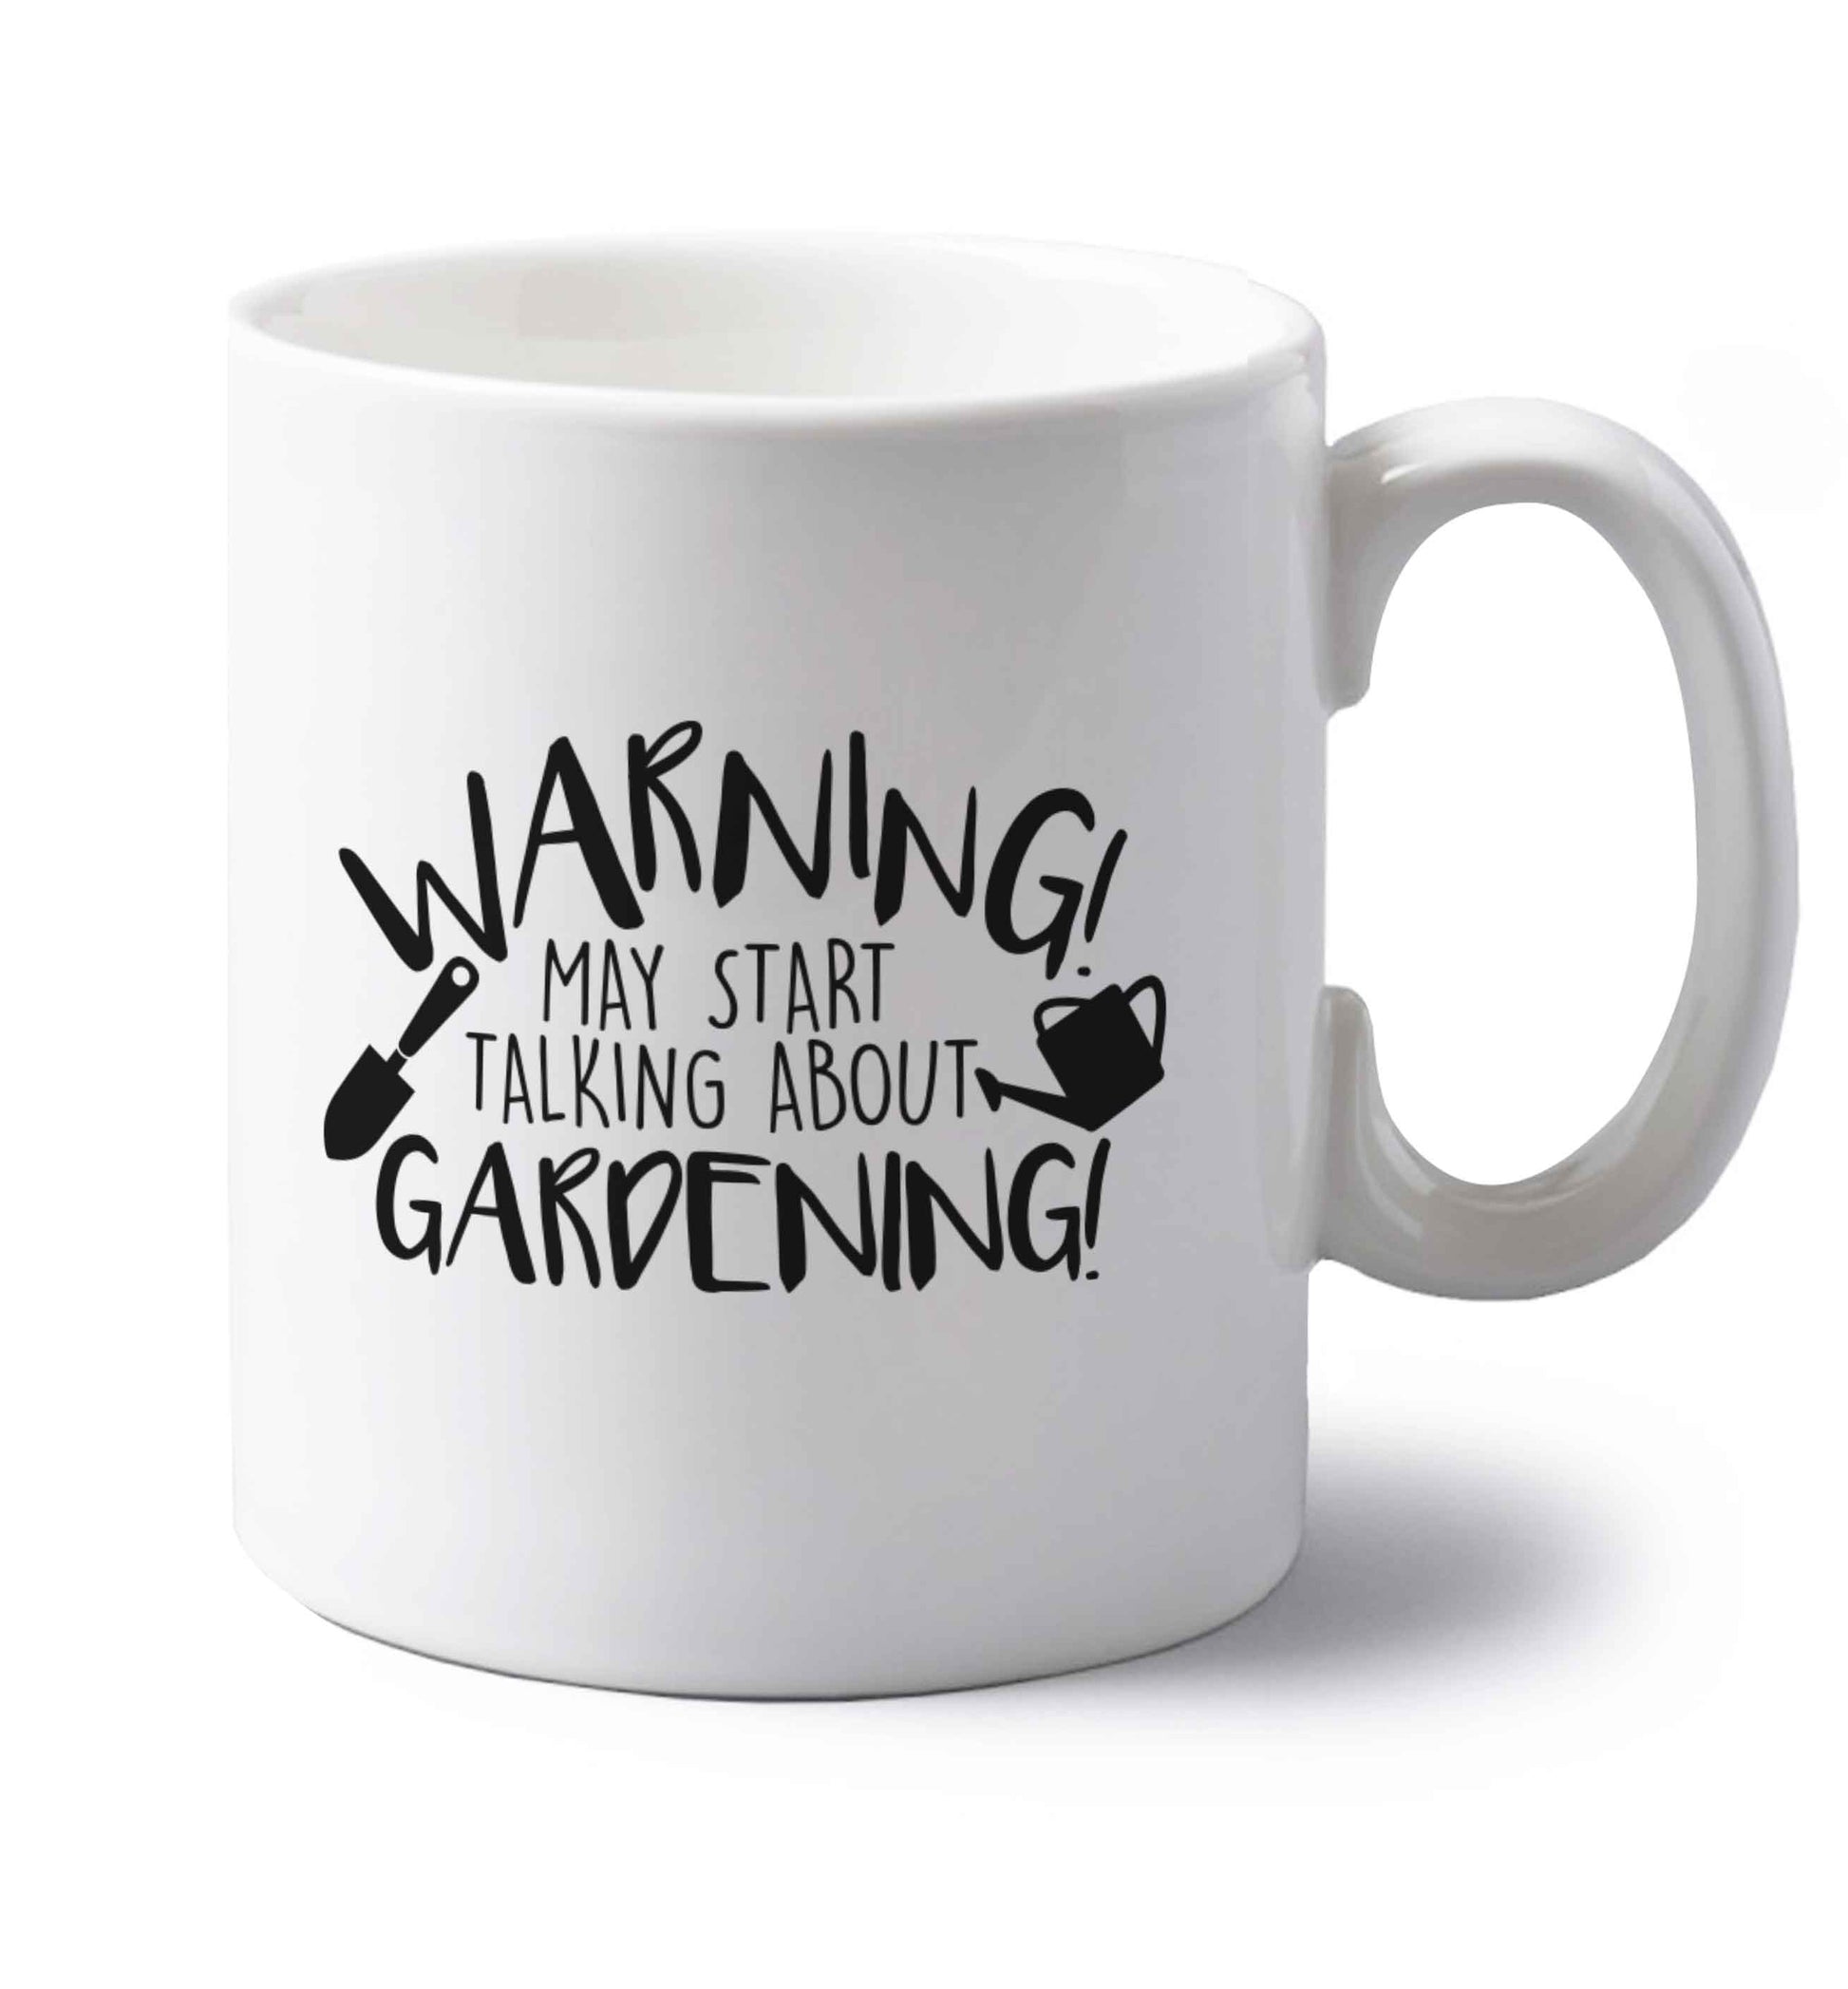 Warning may start talking about gardening left handed white ceramic mug 